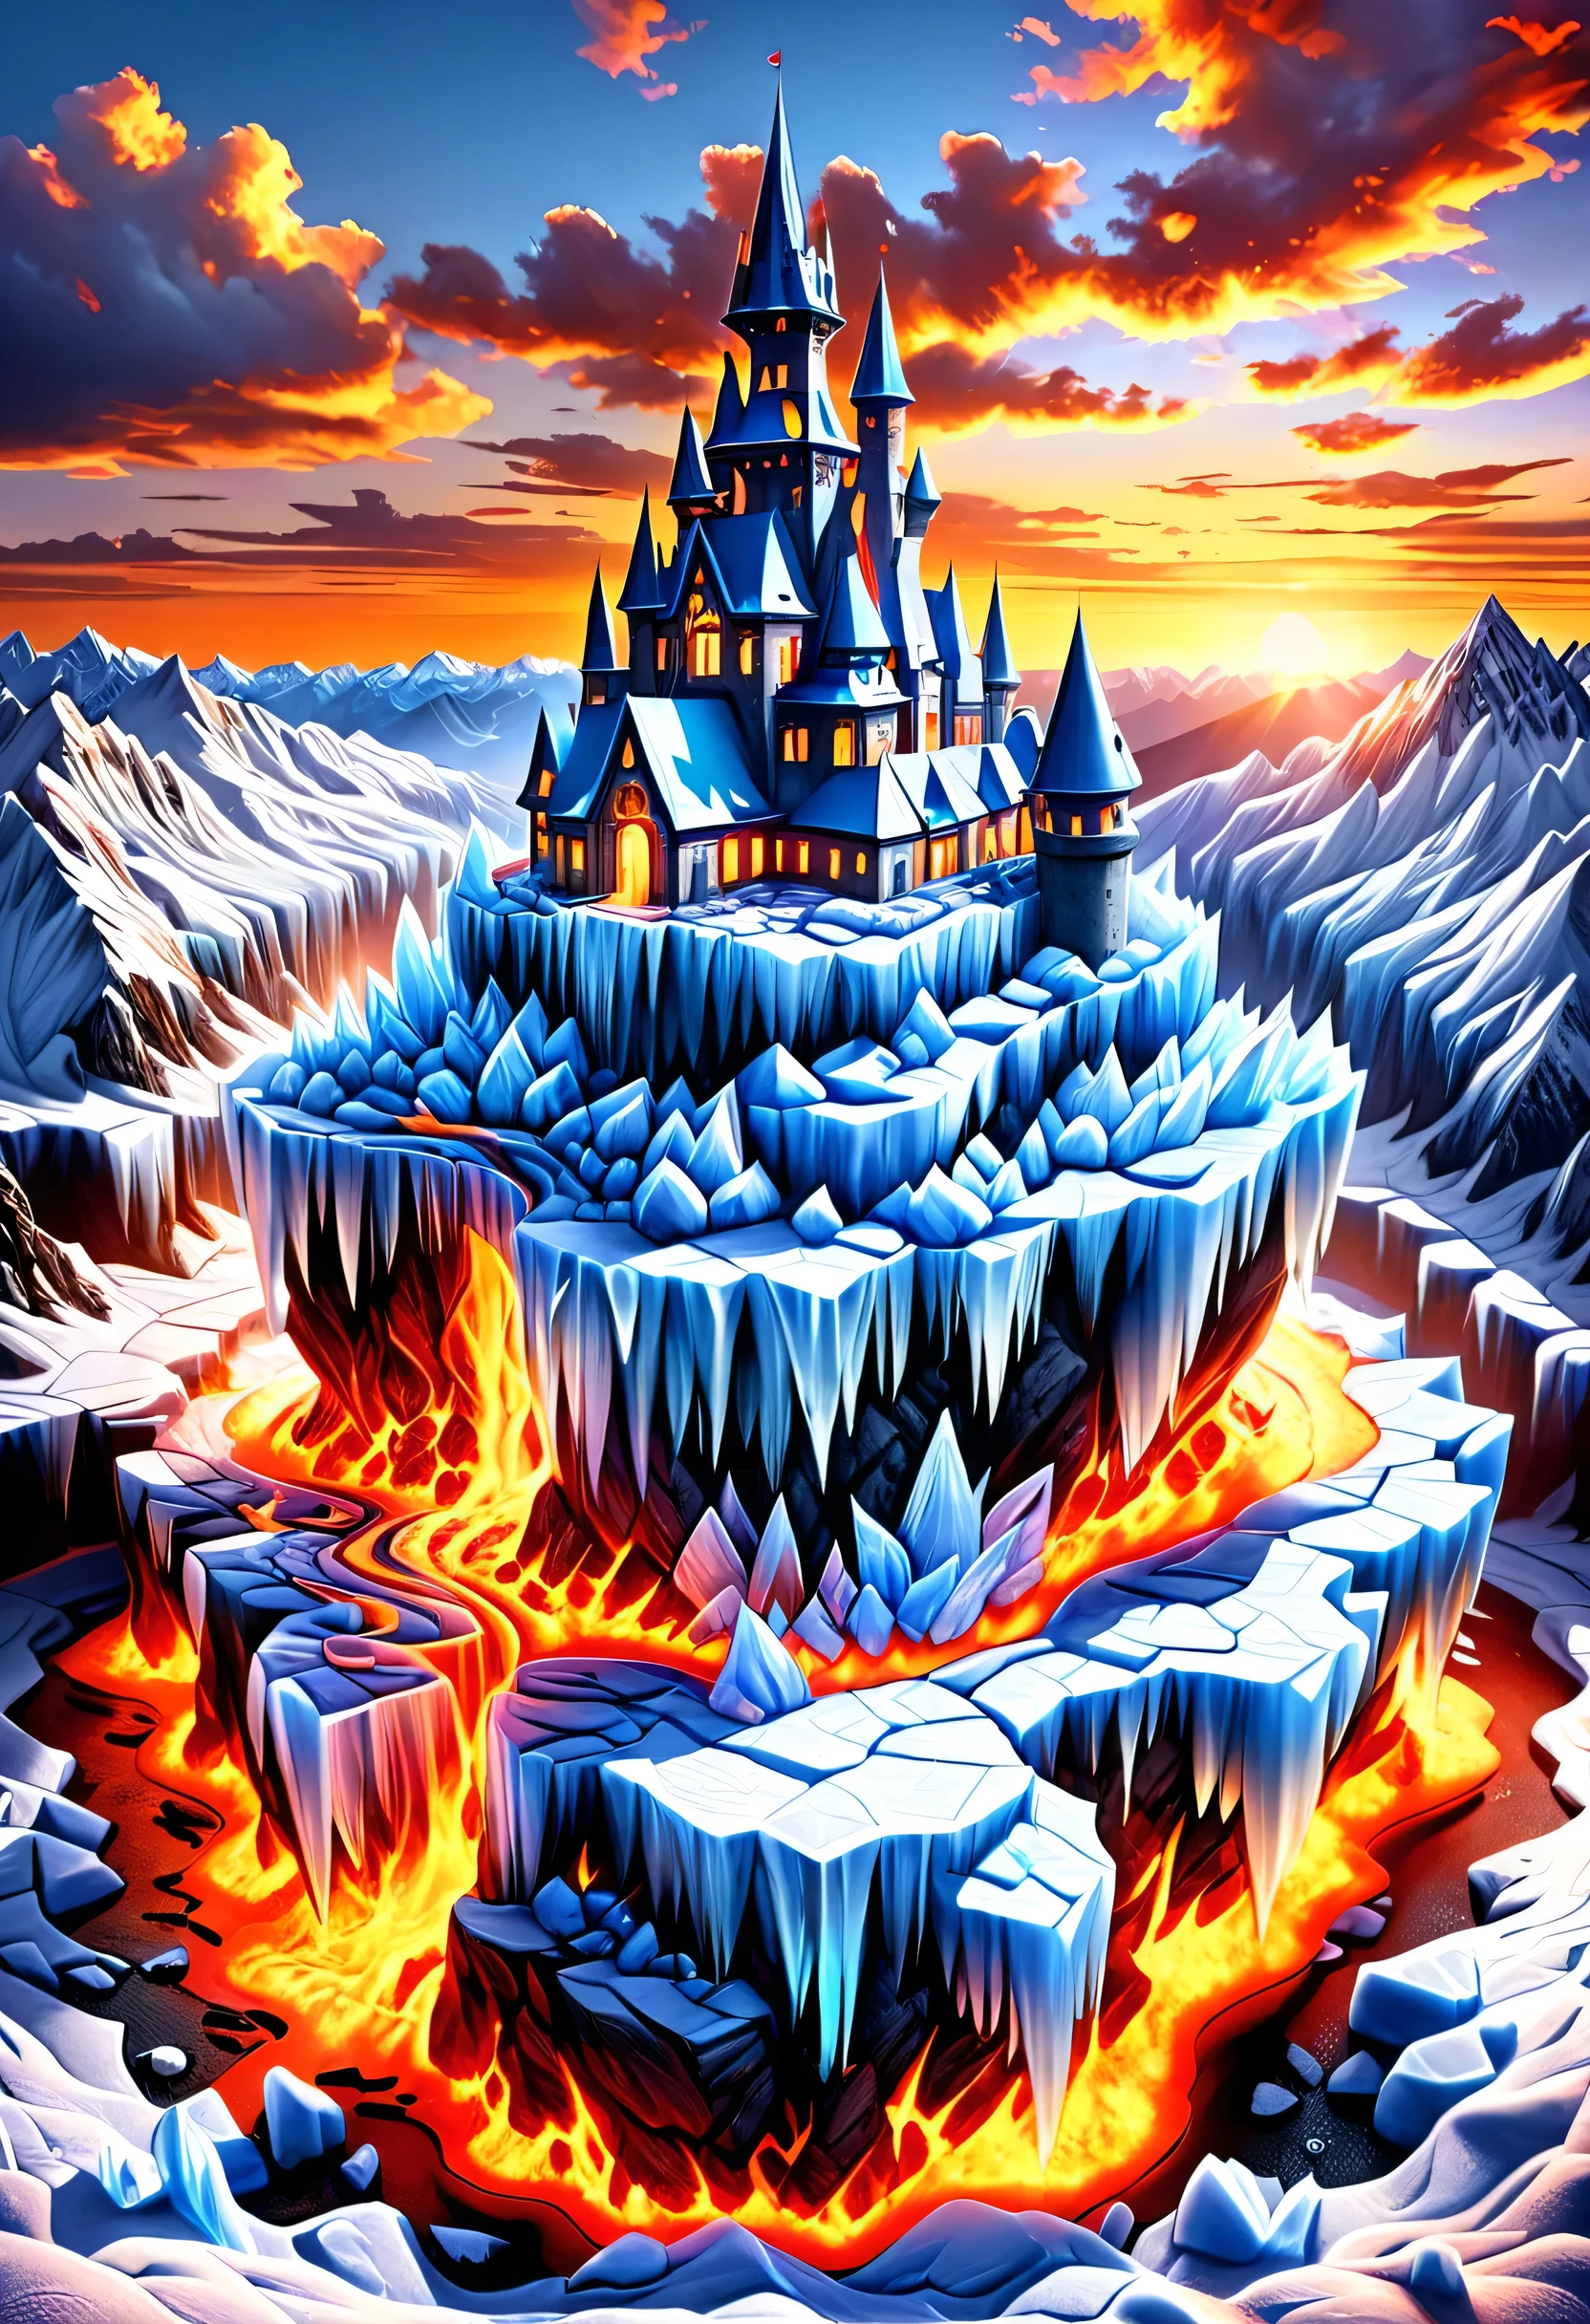 파노라마 상을 받은 사진, 사실적인, 매우 상세한 ~의 a castle 만들어진 from (얼음: 1.3) 만들어진_~의_얼음 standing on the peak ~의 a snowy mountain, an impressive best detailed castle 만들어진 from 얼음 (사실적인, 매우 상세한), 타워와 함께, 교량, 용암으로 가득 찬 해자 (사실적인, 매우 상세한),  standing on top ~의 a snowy mountain (걸작, 매우 상세한, 최고의 품질), 소나무와, 일몰 빛, 공중에 구름이 좀 있어,  고산 산맥 배경, 가장 현실적인, 최고의 세부 사항, 최고의 품질, 16,000, [매우 상세한], 걸작, 최고의 품질, (매우 상세한), 울트라 와이드 샷, 포토리얼리즘, depth ~의 field, 흥미를 끌다